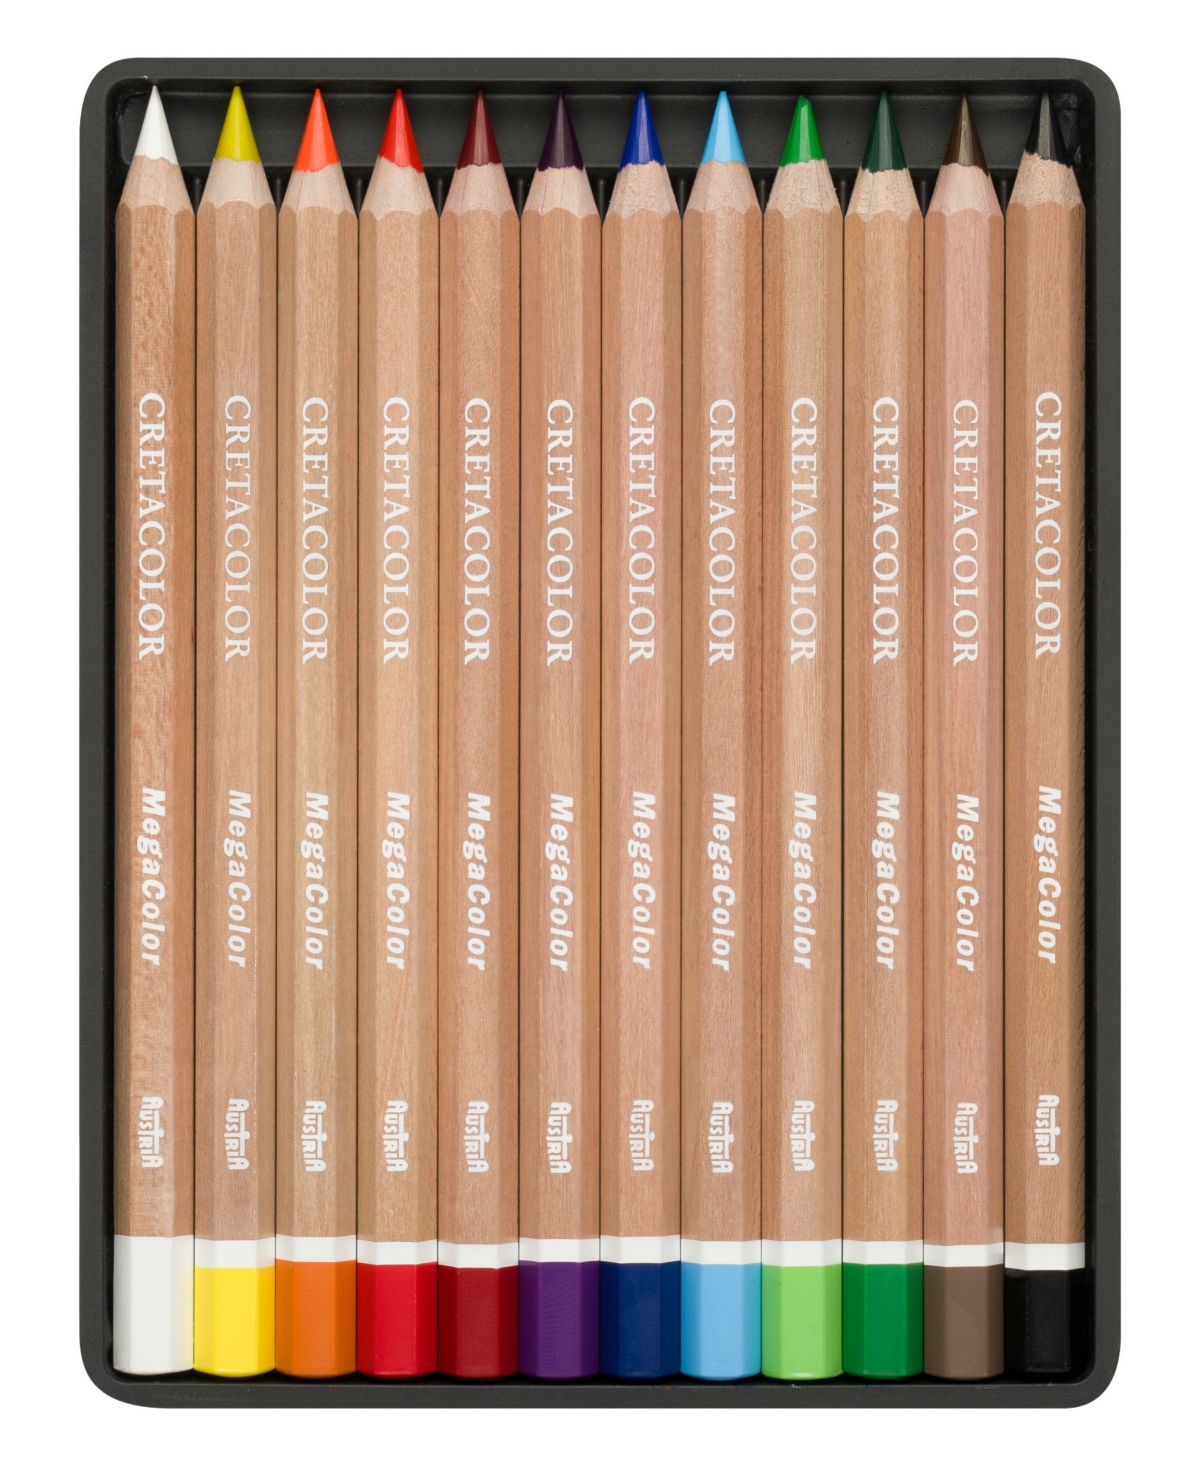 Megacolor Pencil Set, 12 Colors - Multi